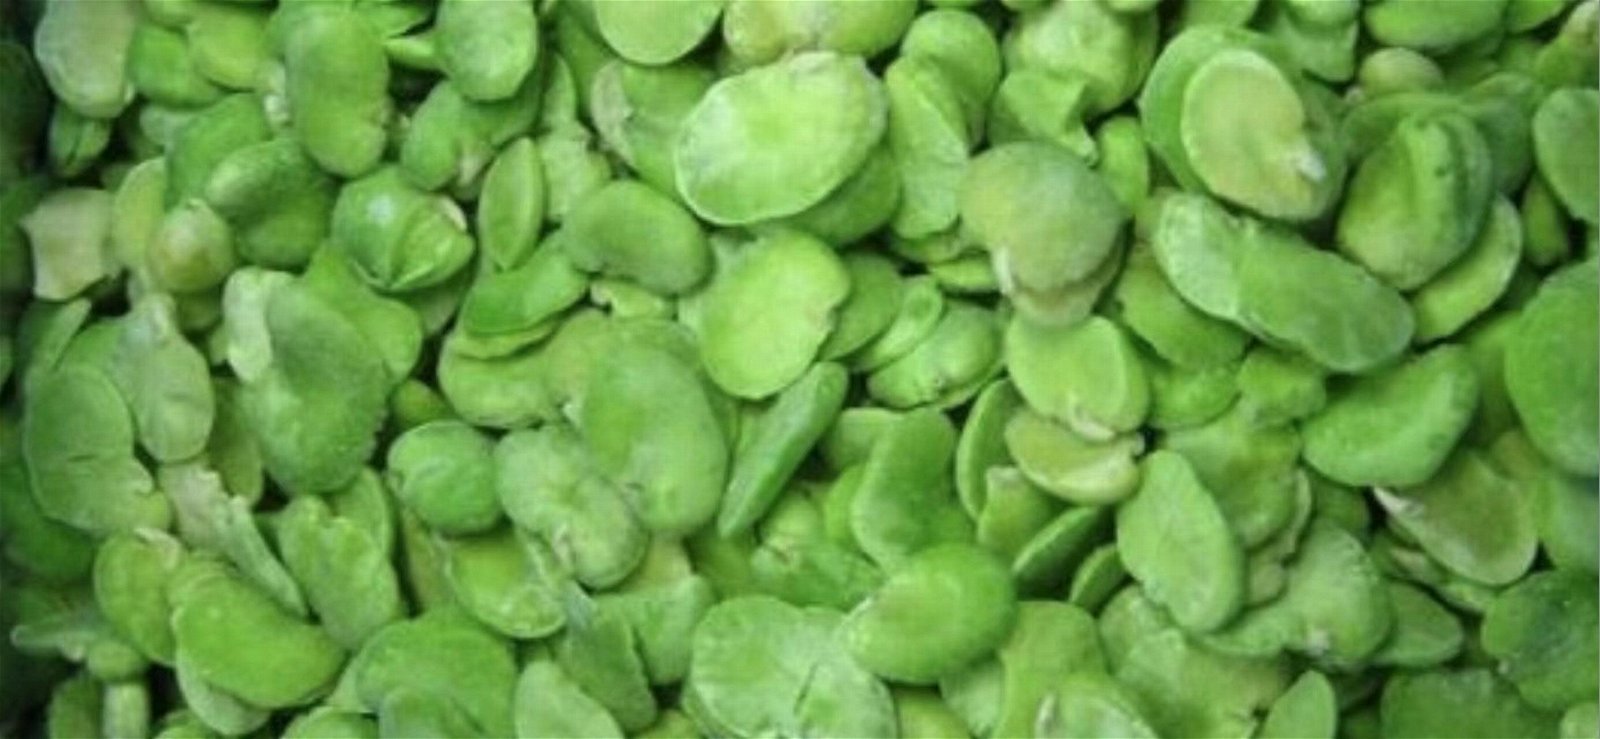 IQF Broad Beans,Frozen Broad Beans,IQF Fava Bean,Frozen Fava Beans,wholes/halves 2